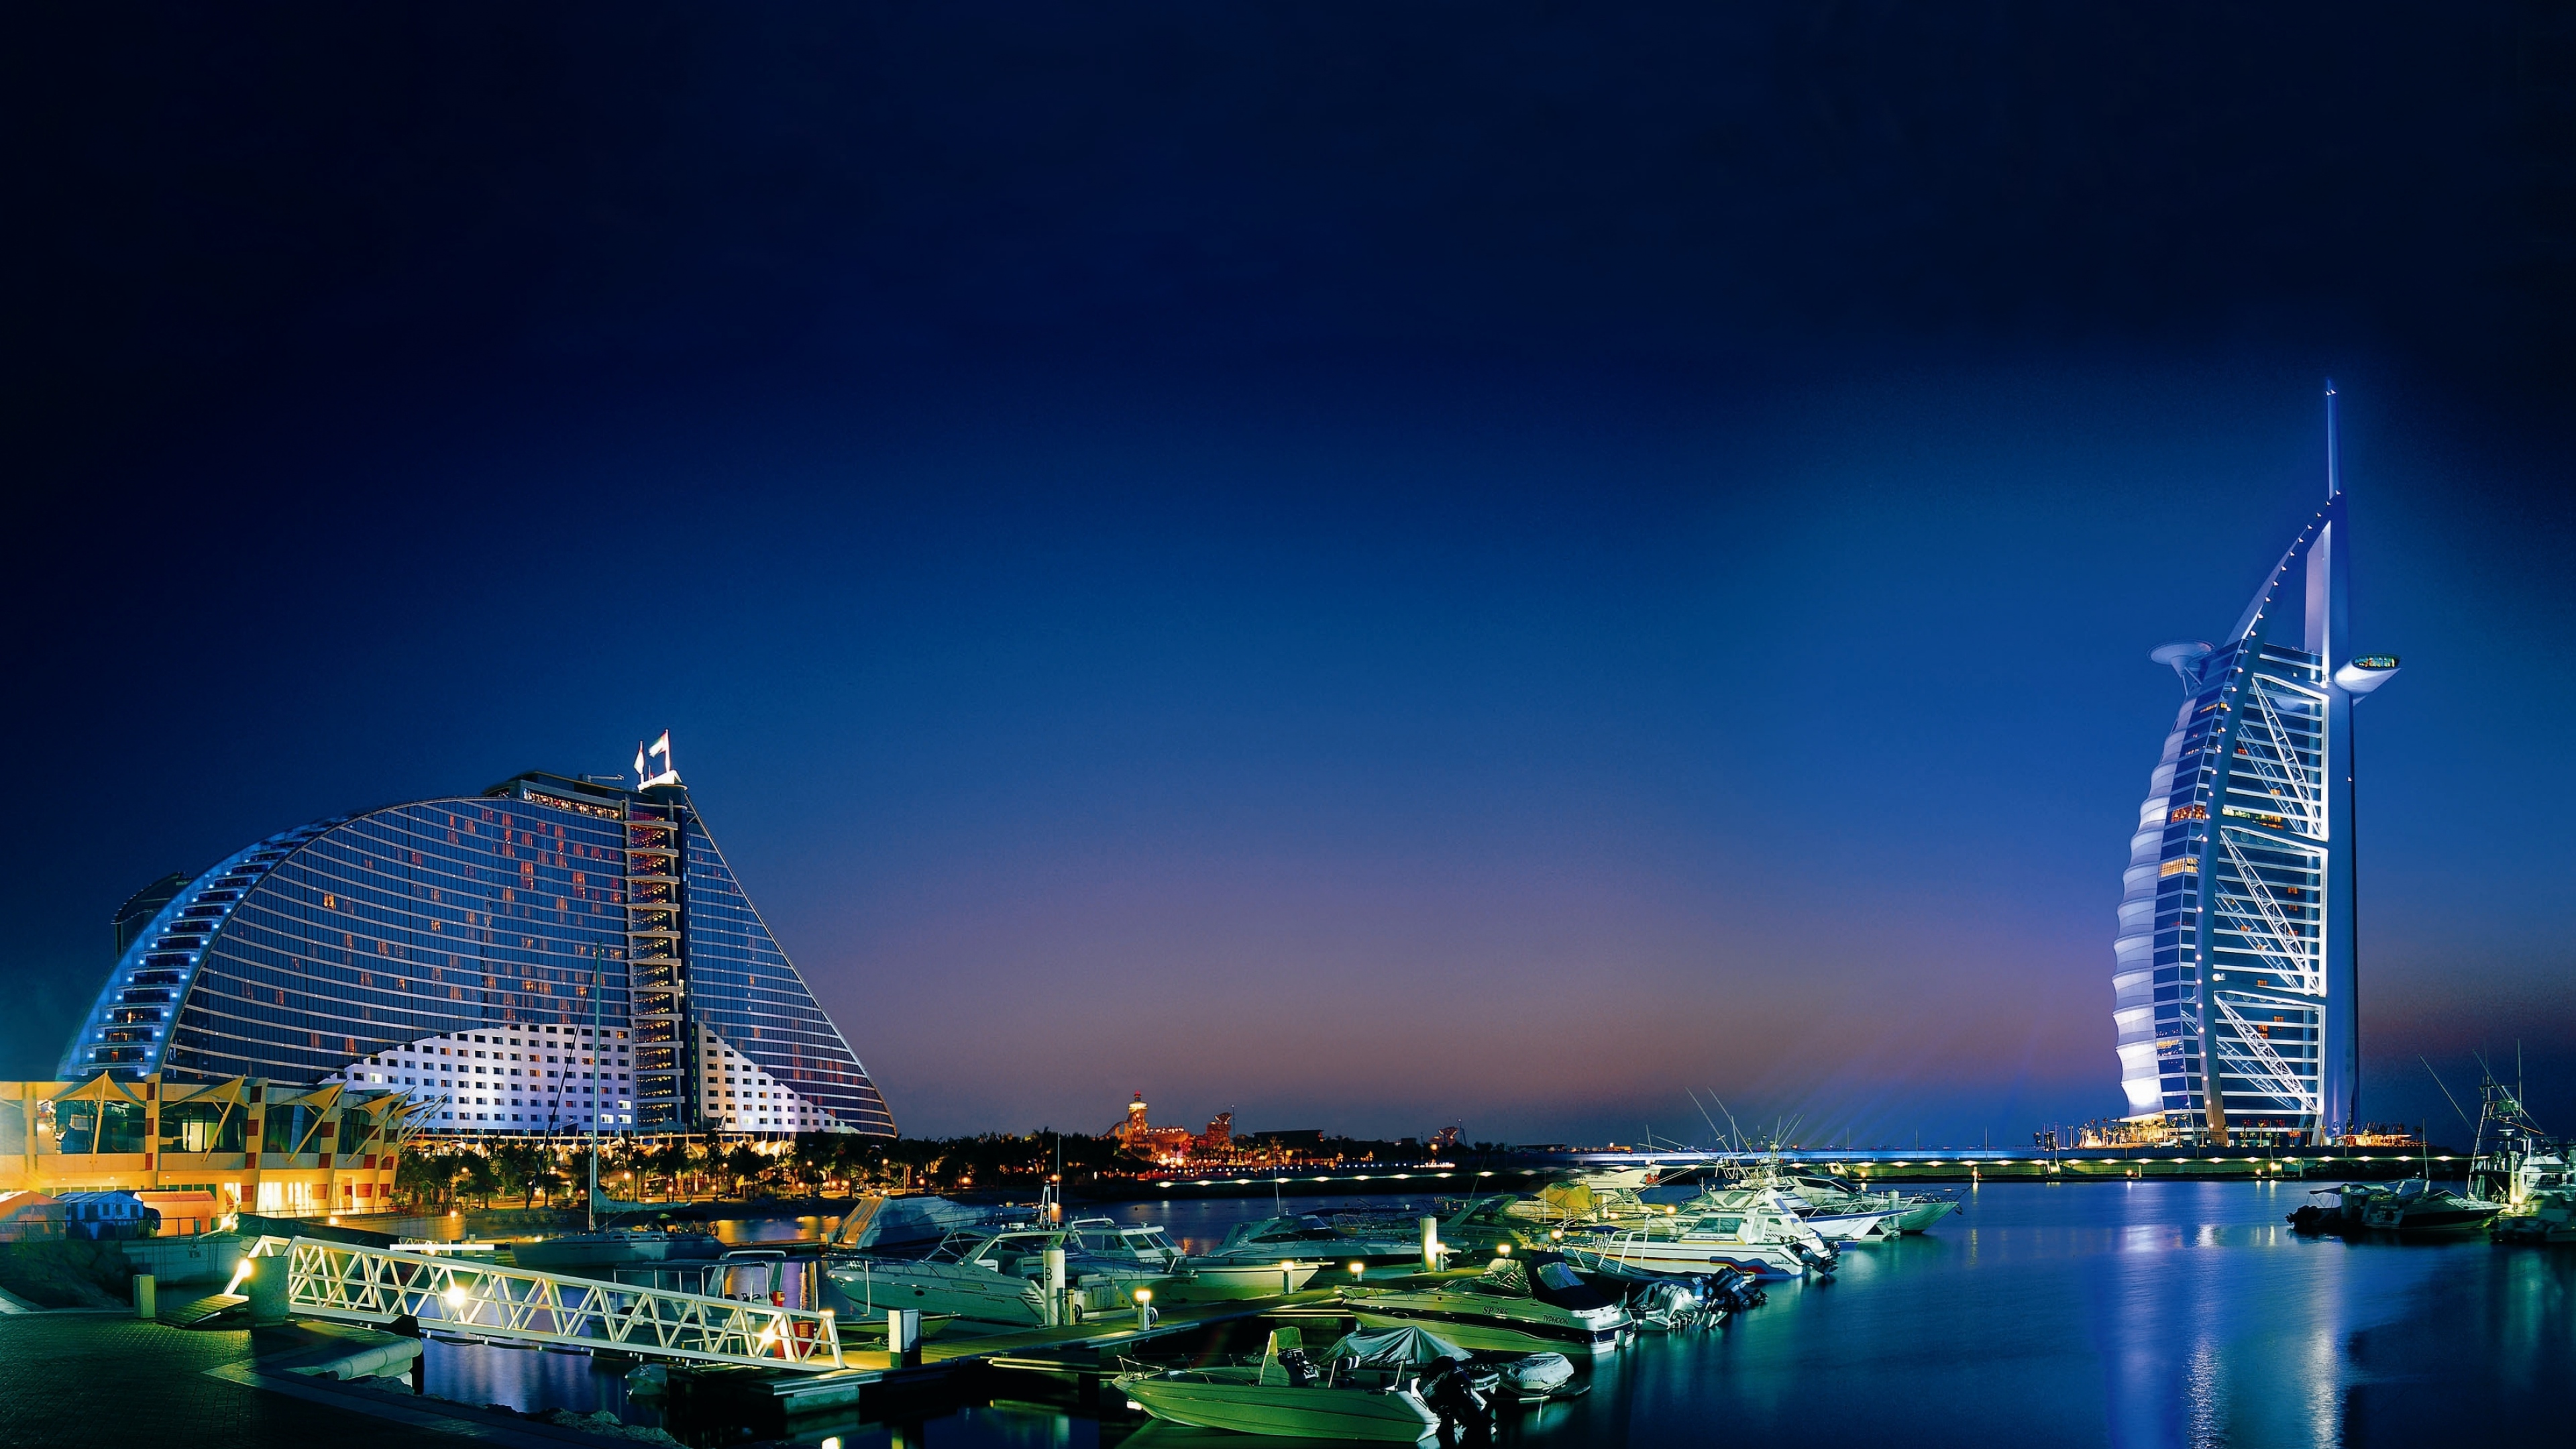 Boat Building Burj Al Arab City Dubai Harbor Night United Arab Emirates 3840x2160